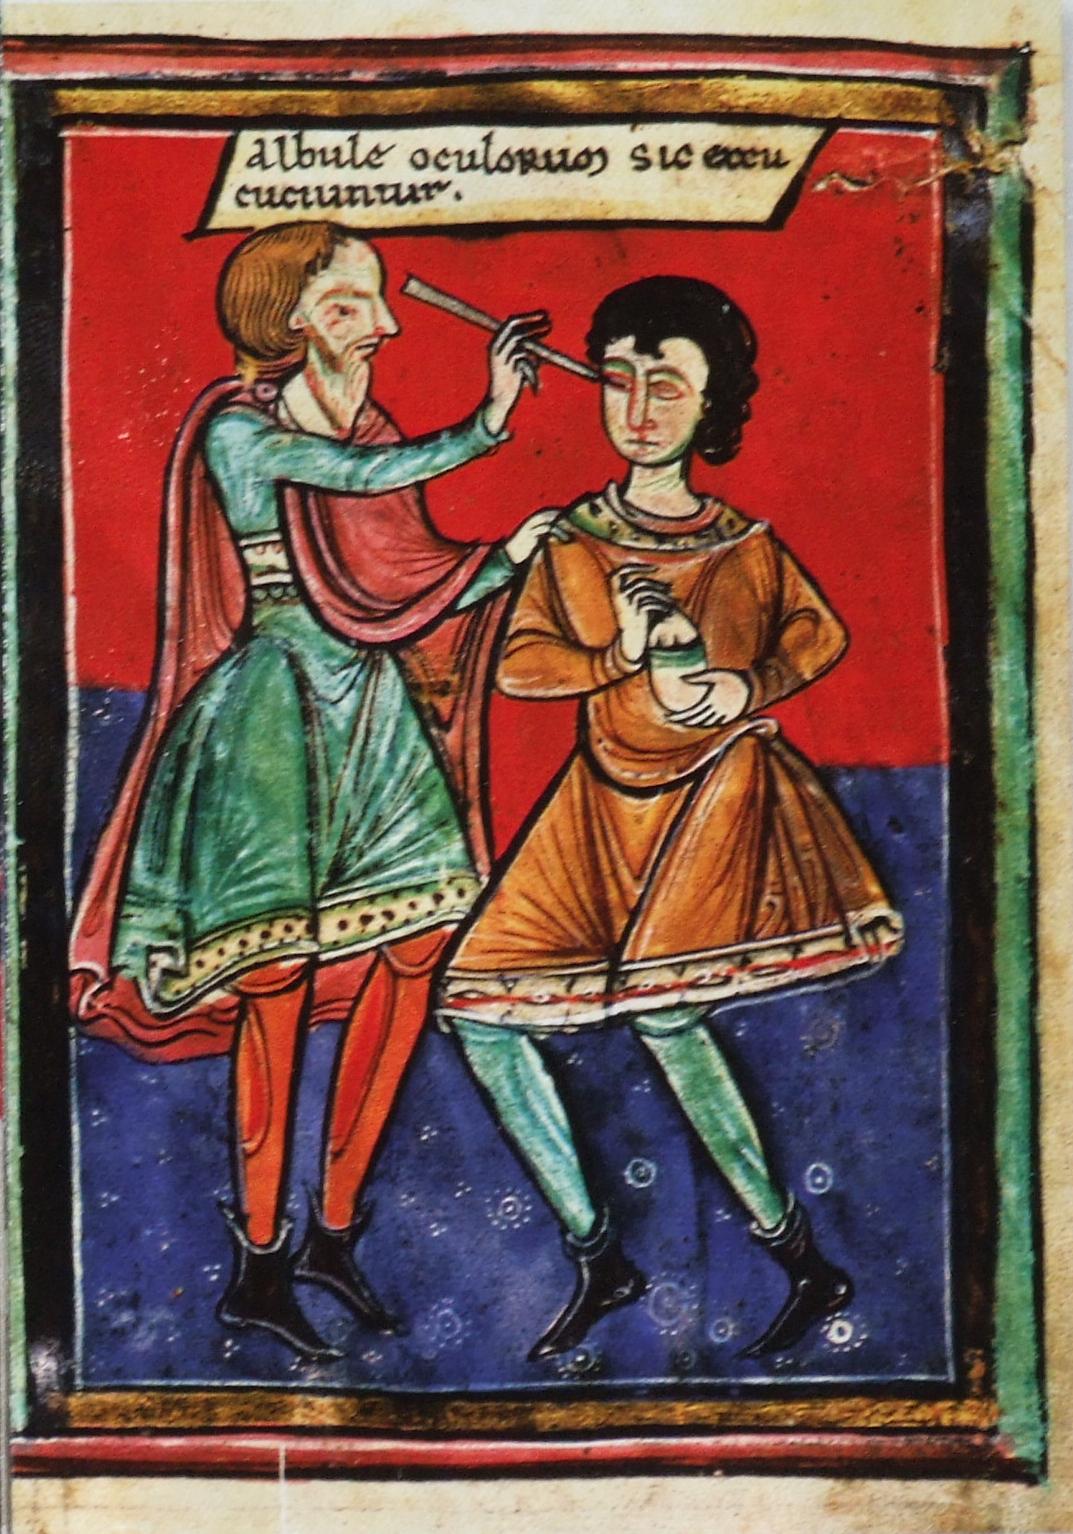 Операция на глазу (вероятно, удаление катаракты или вскрытие бельма), Albulae oculorum sic excutiuntur, 1195 г.